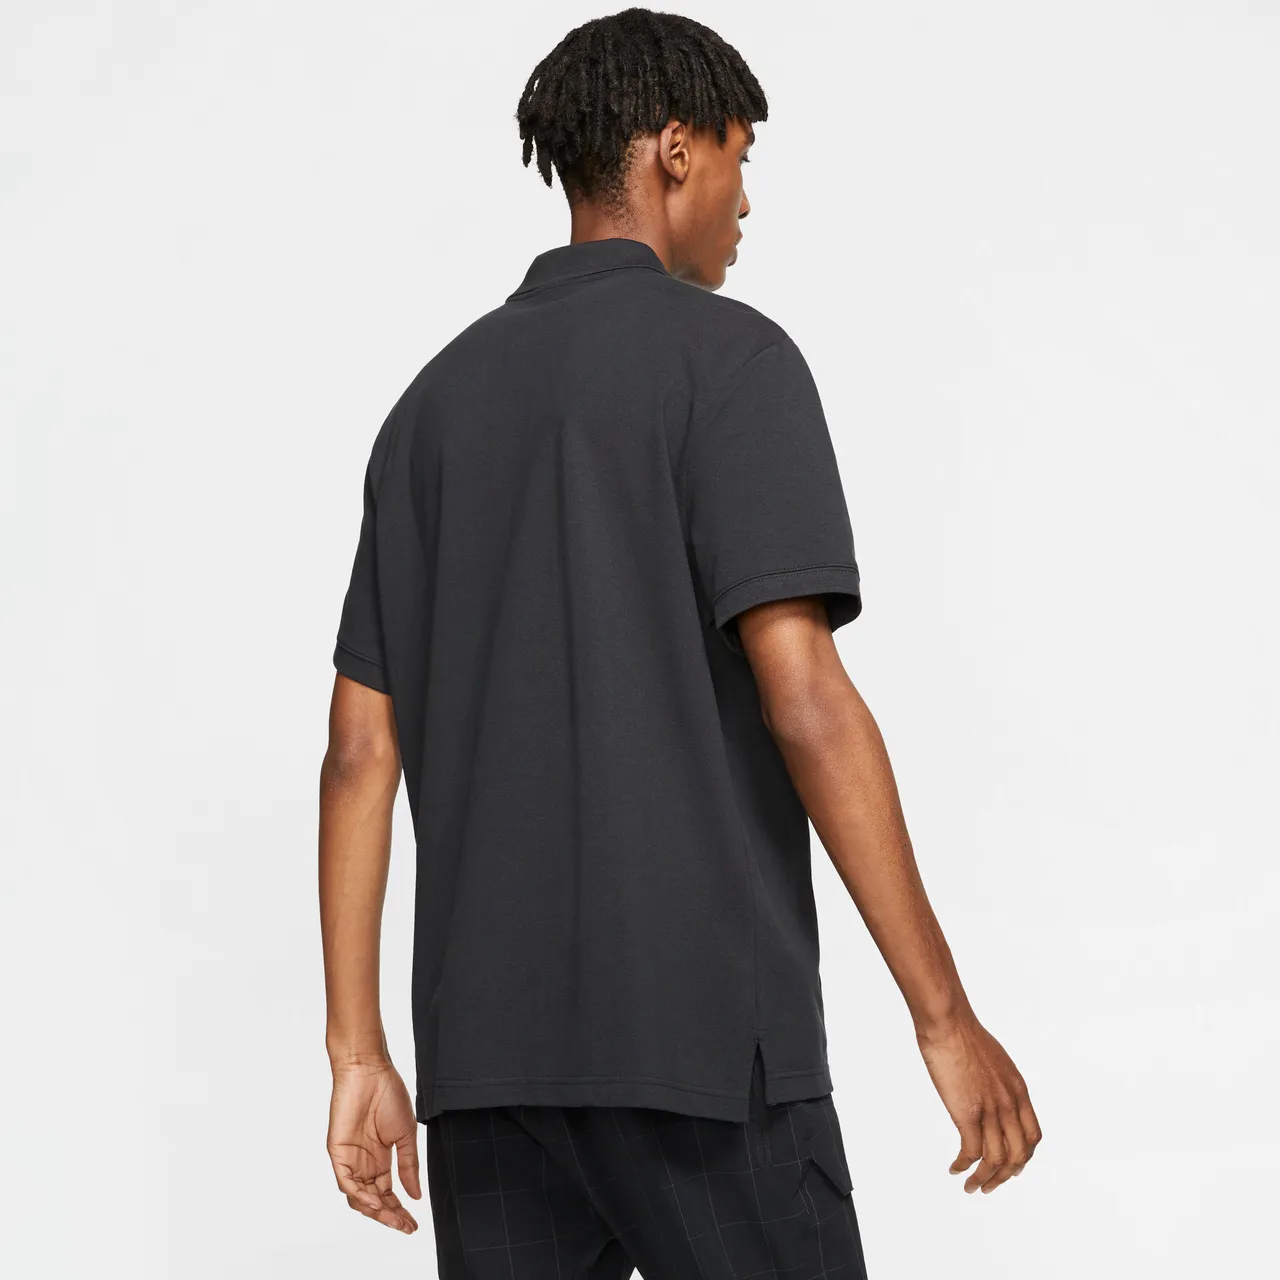 Nike Sportswear Men's Polo - Black - Cotton